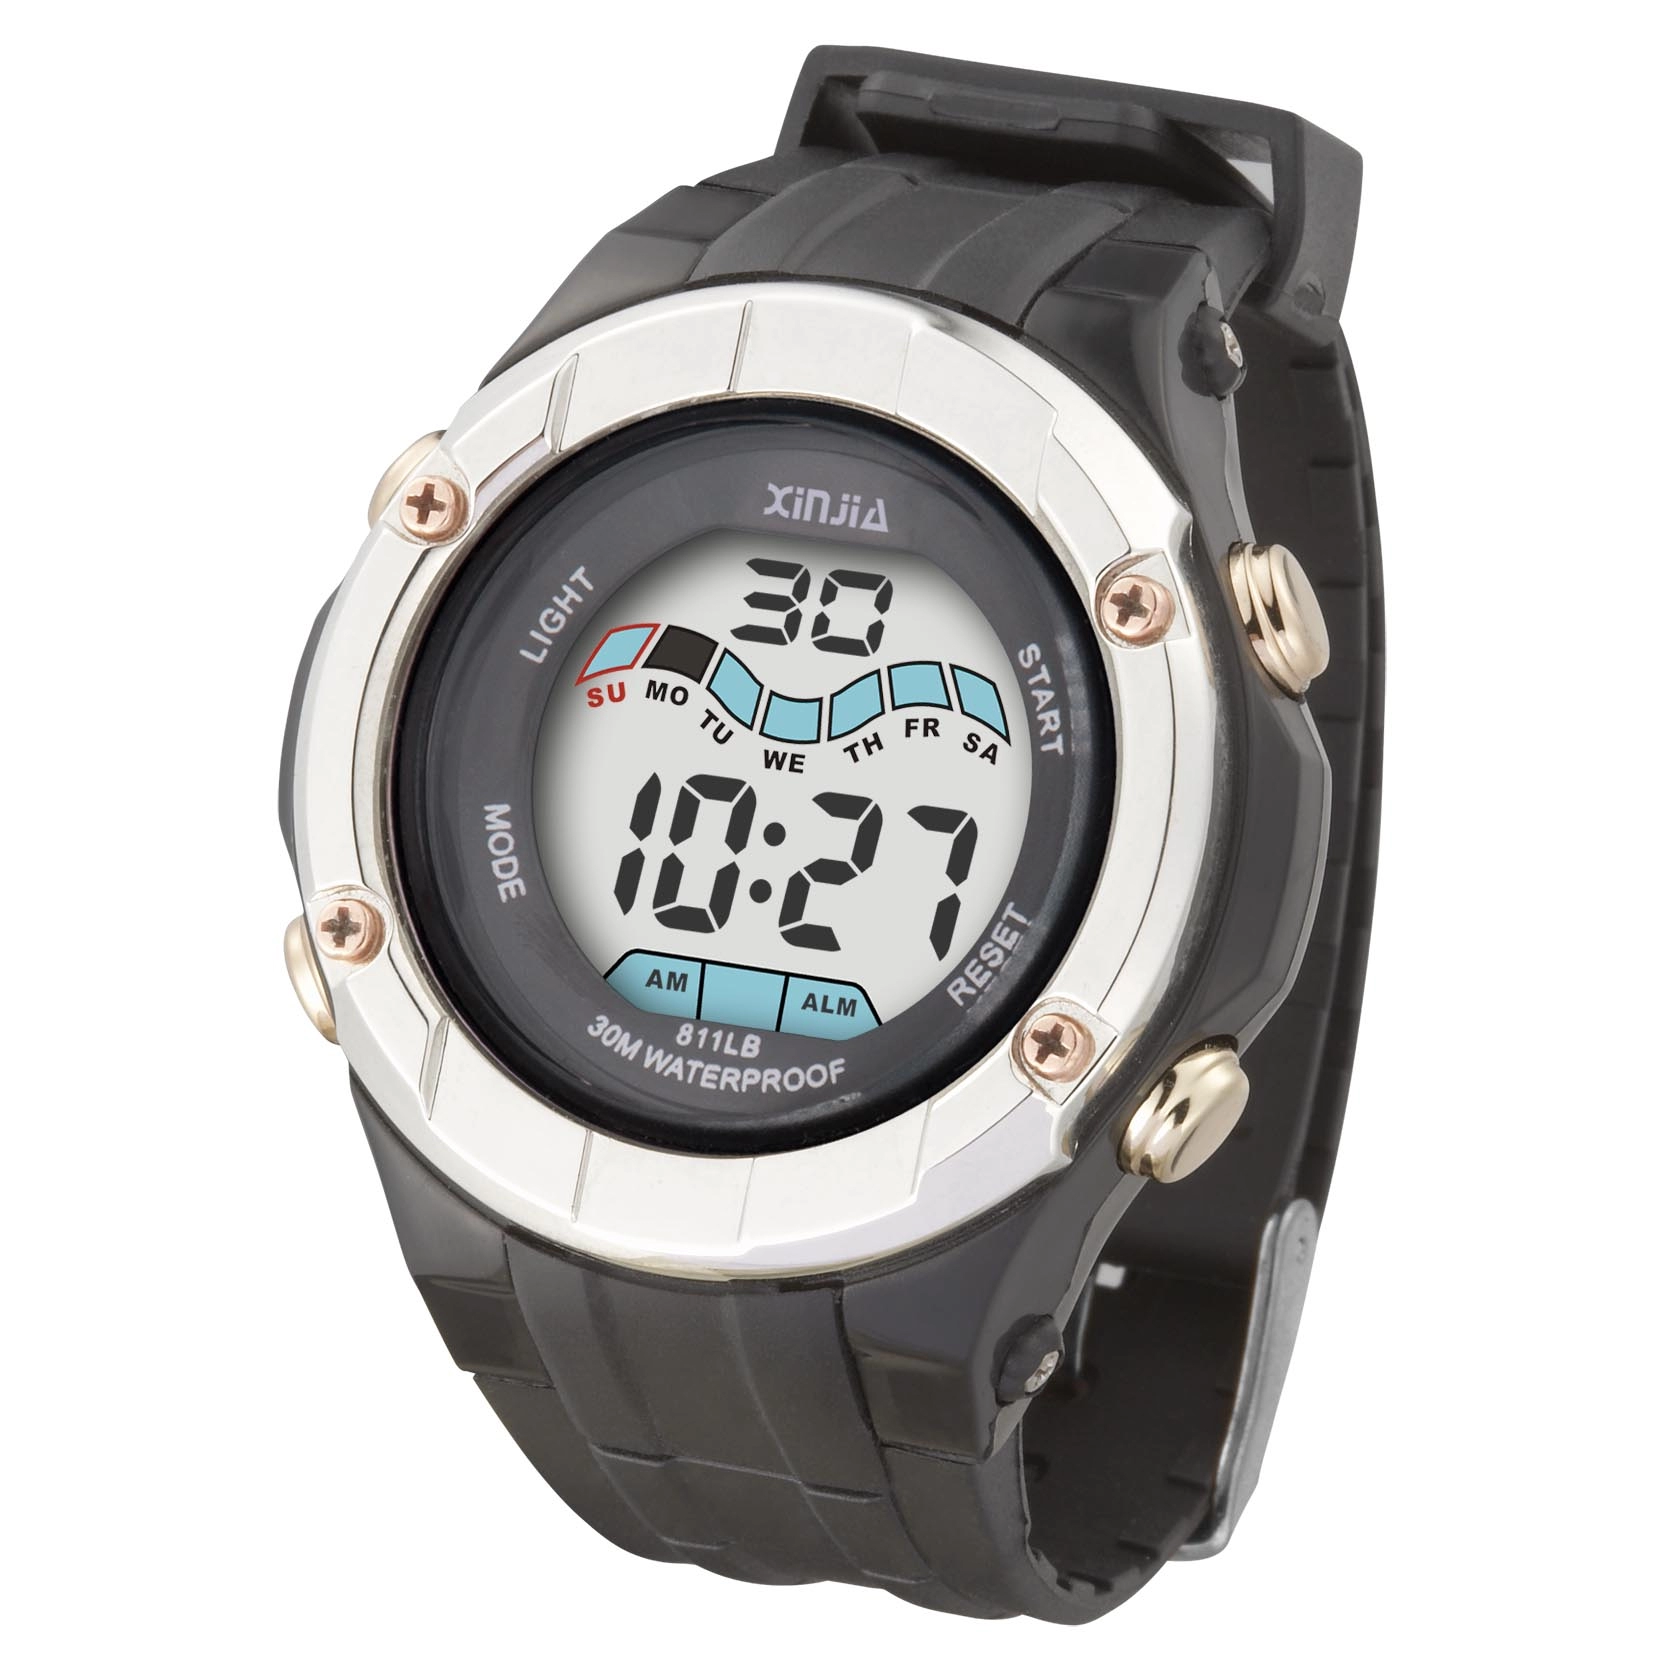 Alloy Watch Bezel Flashing Light Water Resistant Sport Men Wrist Watch